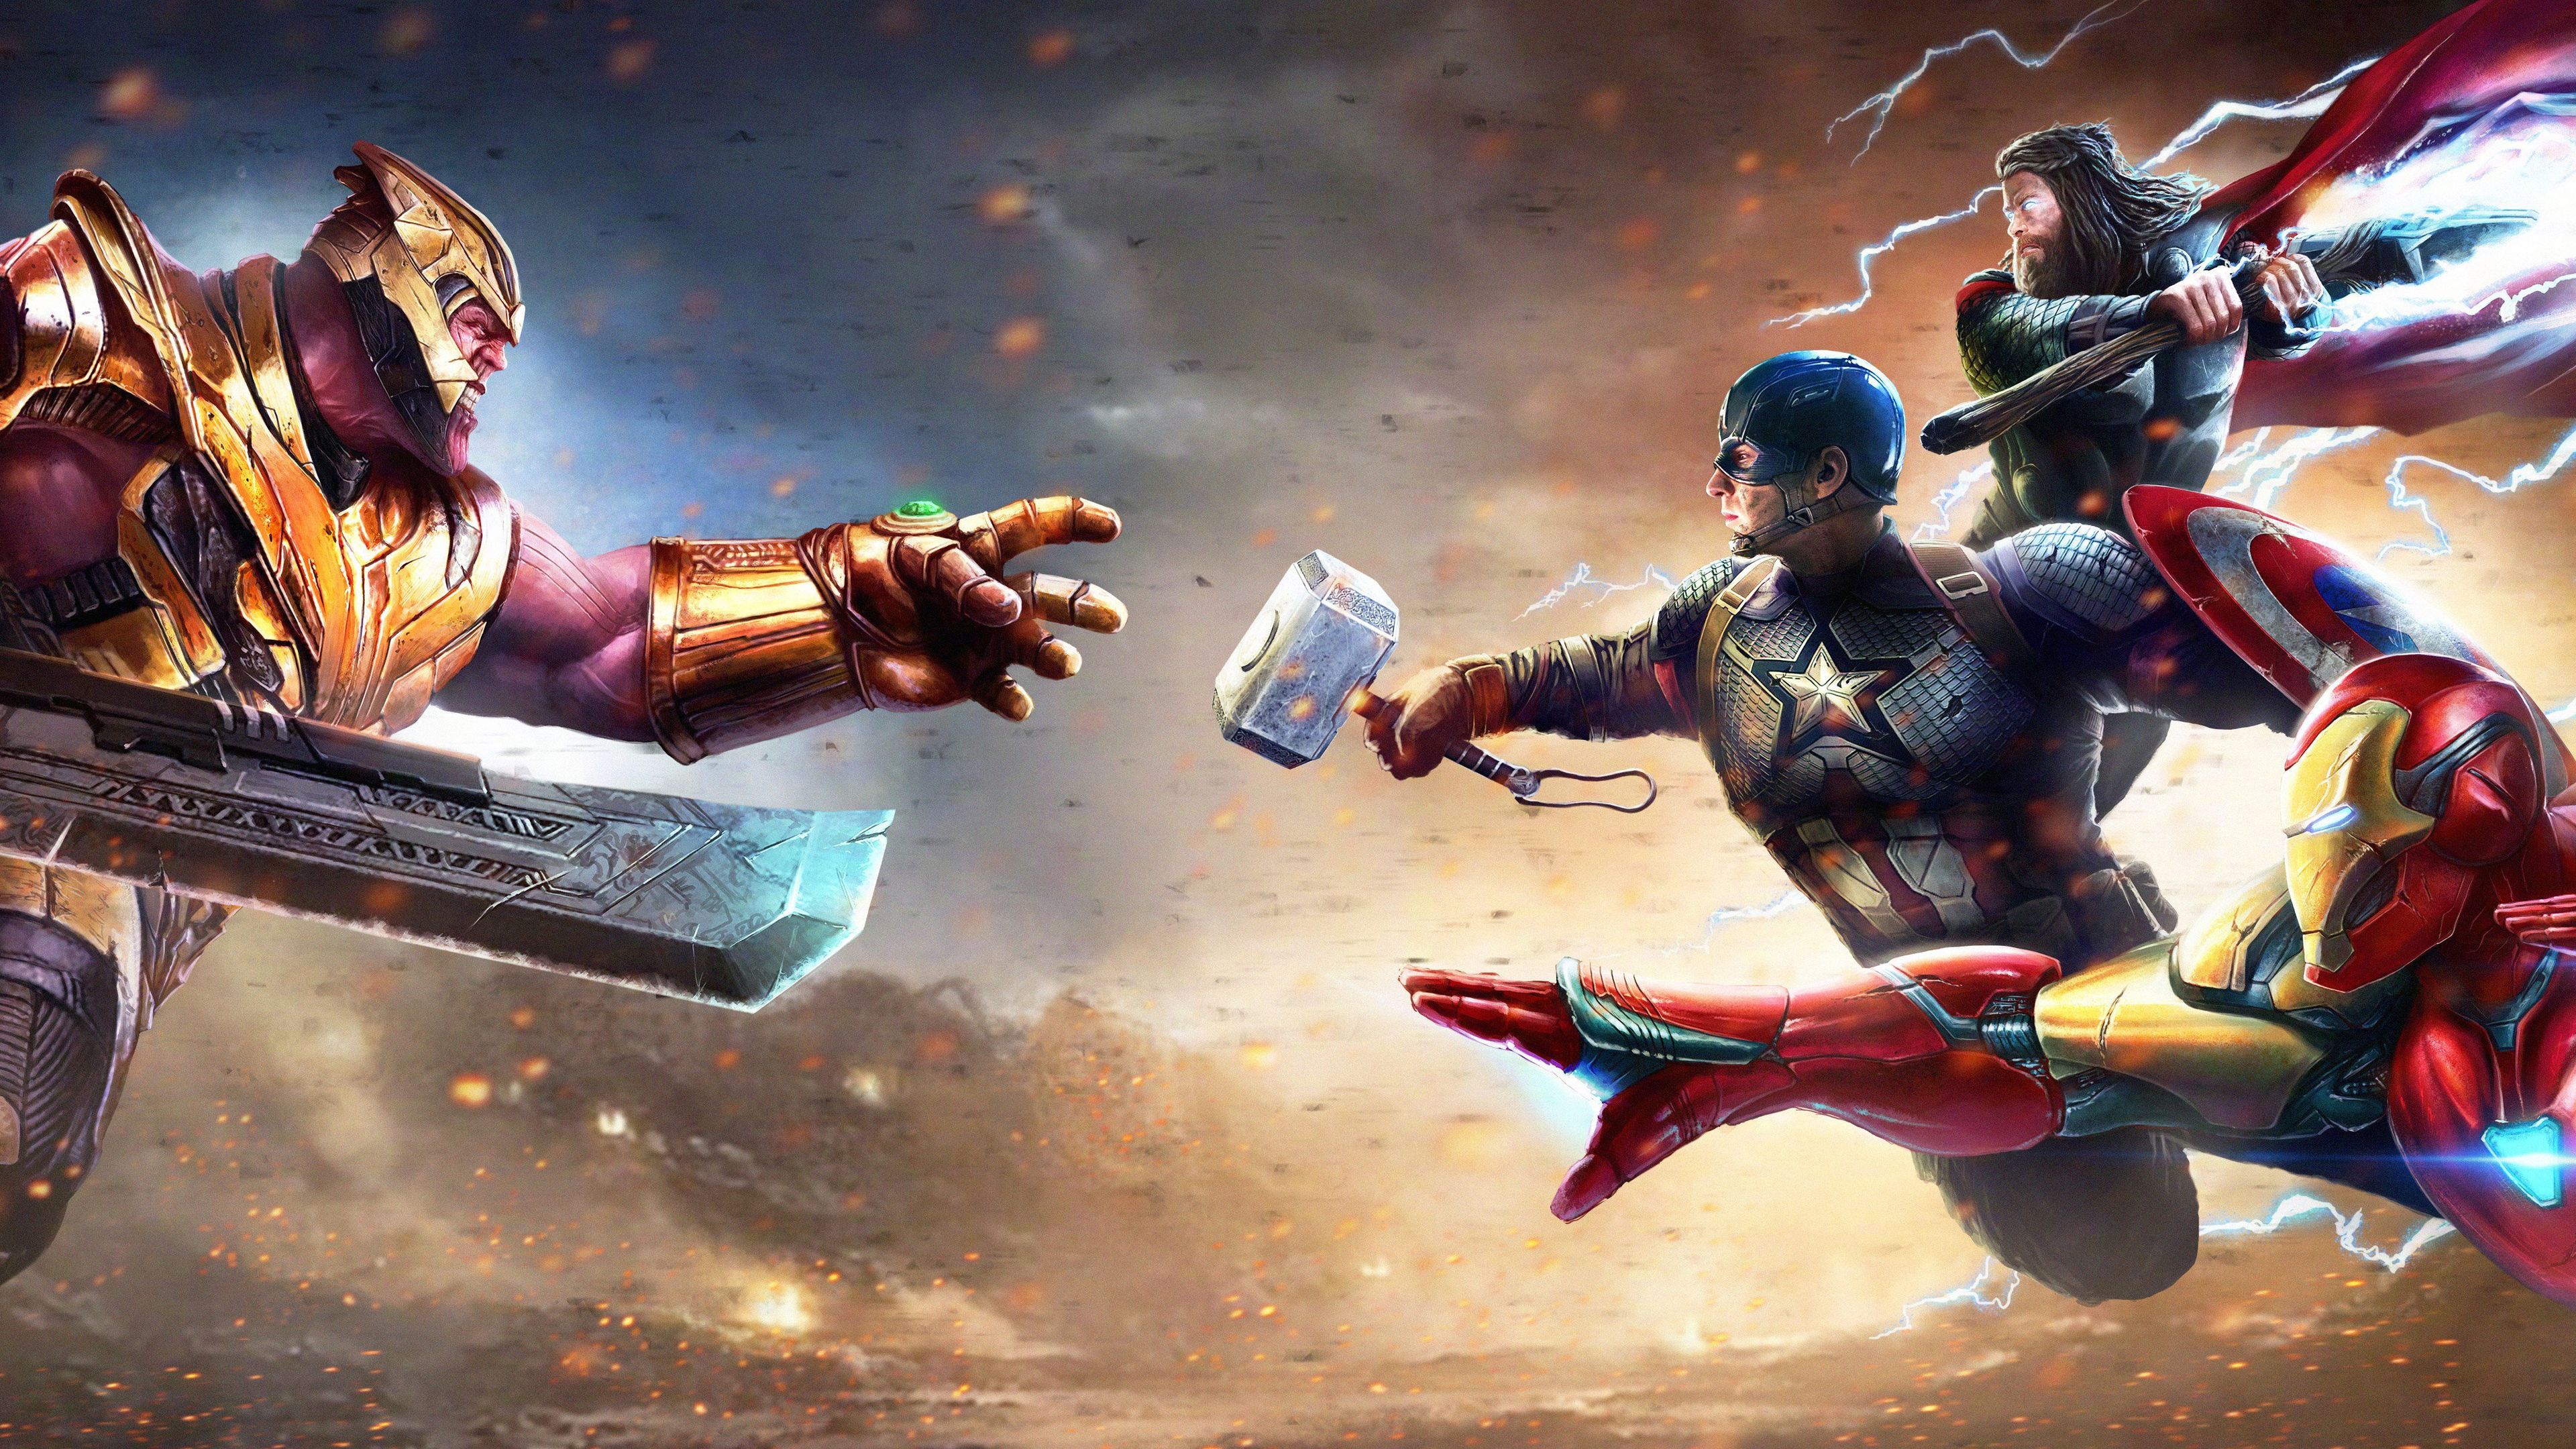 Wallpaper 4k Thanos Vs Iron Man Thor Captain America 4k Wallpaper, Artwork Wallpaper, Captain America Wallpaper, Digital Art Wallpaper, Hd Wallpaper, Iron Man Wallpaper, Superheroes Wallpaper, Supervillain Wallpaper, Thanos Wallpaper, Thor